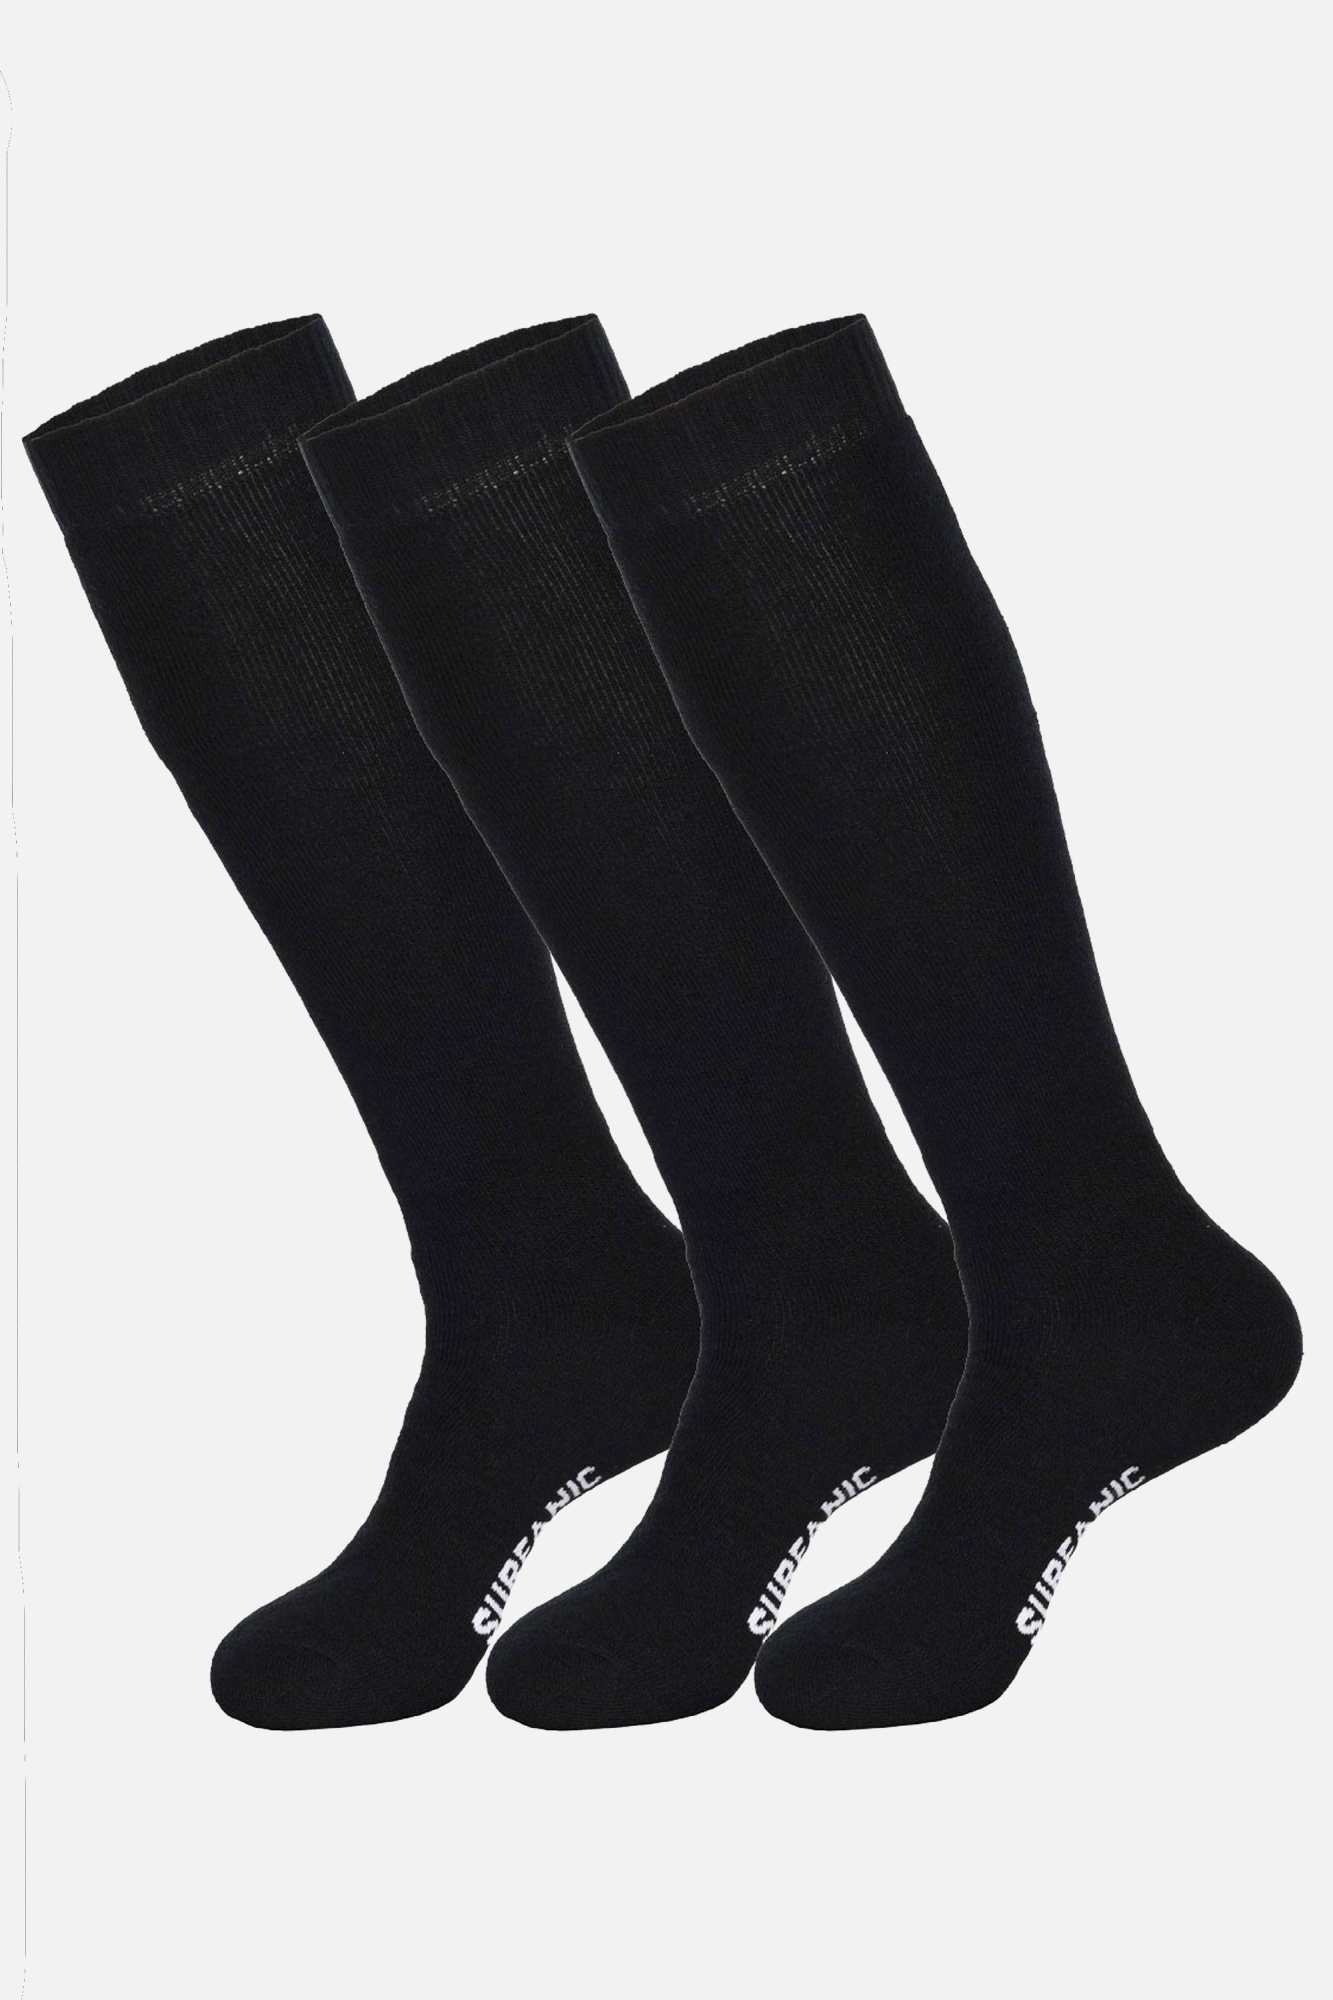 Surfanic Boys Junior Pro Tech 3pk Sock Black - Size: J8-11